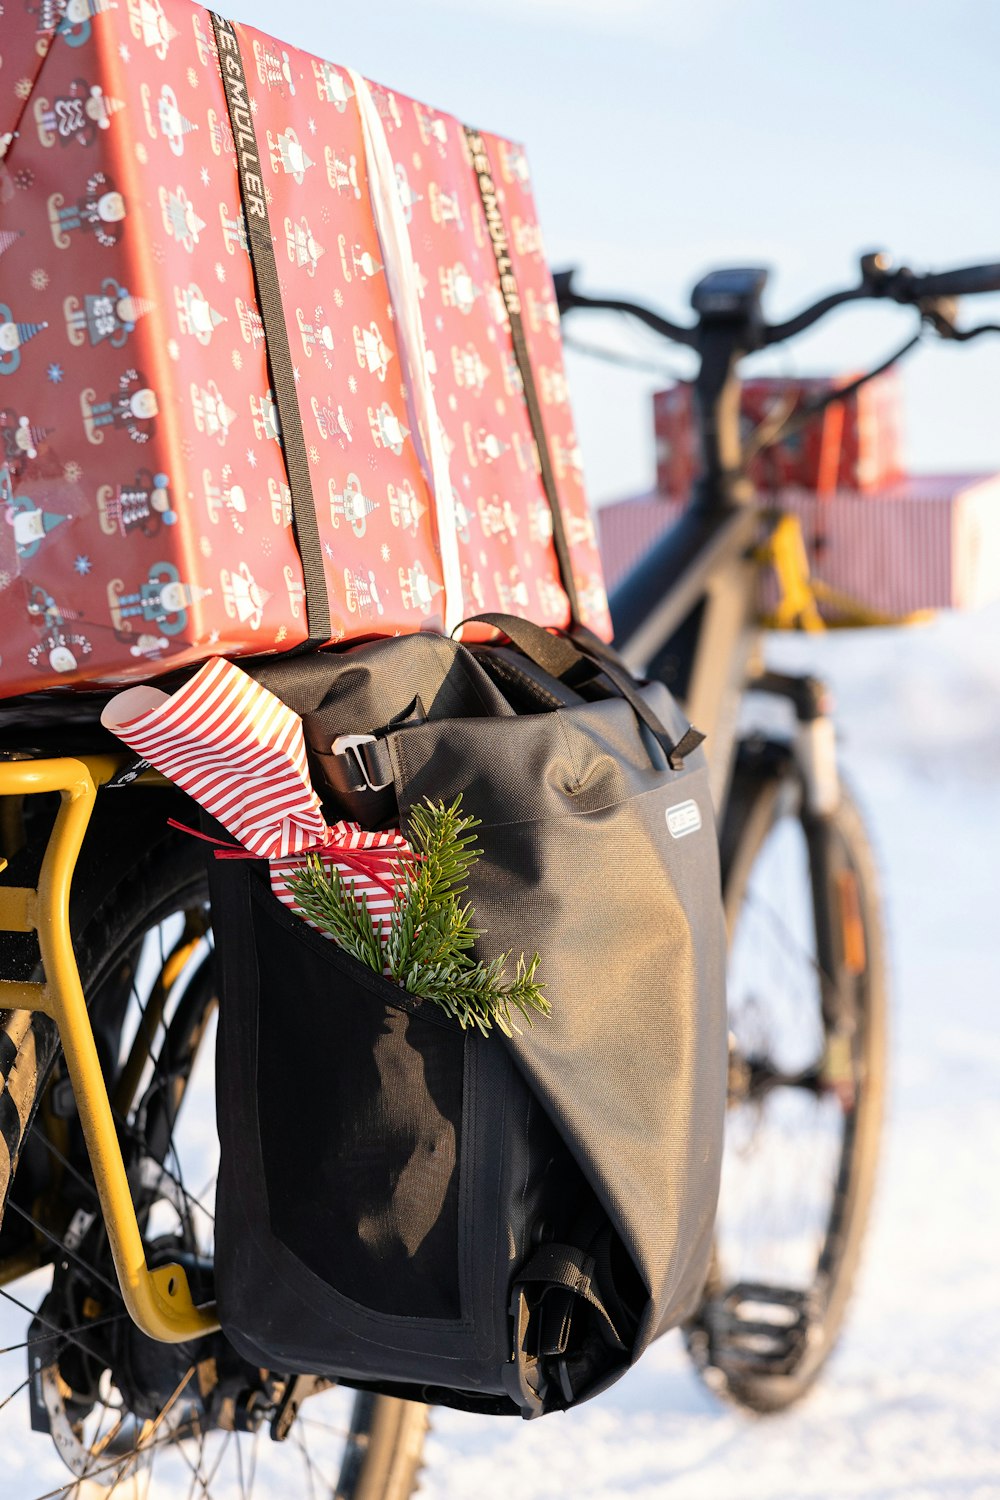 ein Fahrrad mit Geschenken auf der Rückseite